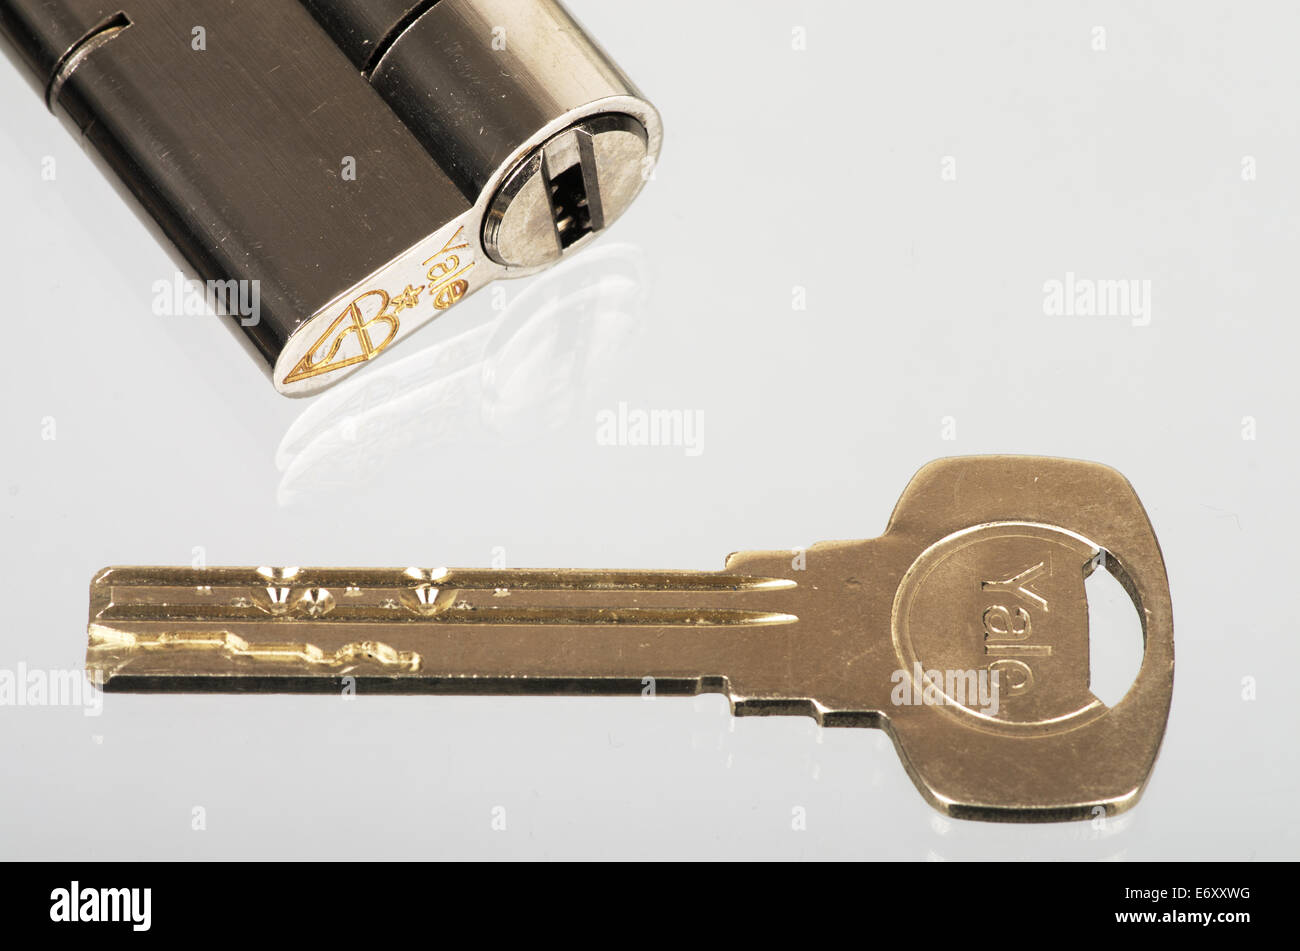 Yale Euro Profile Superior Lock And Key Stock Photo